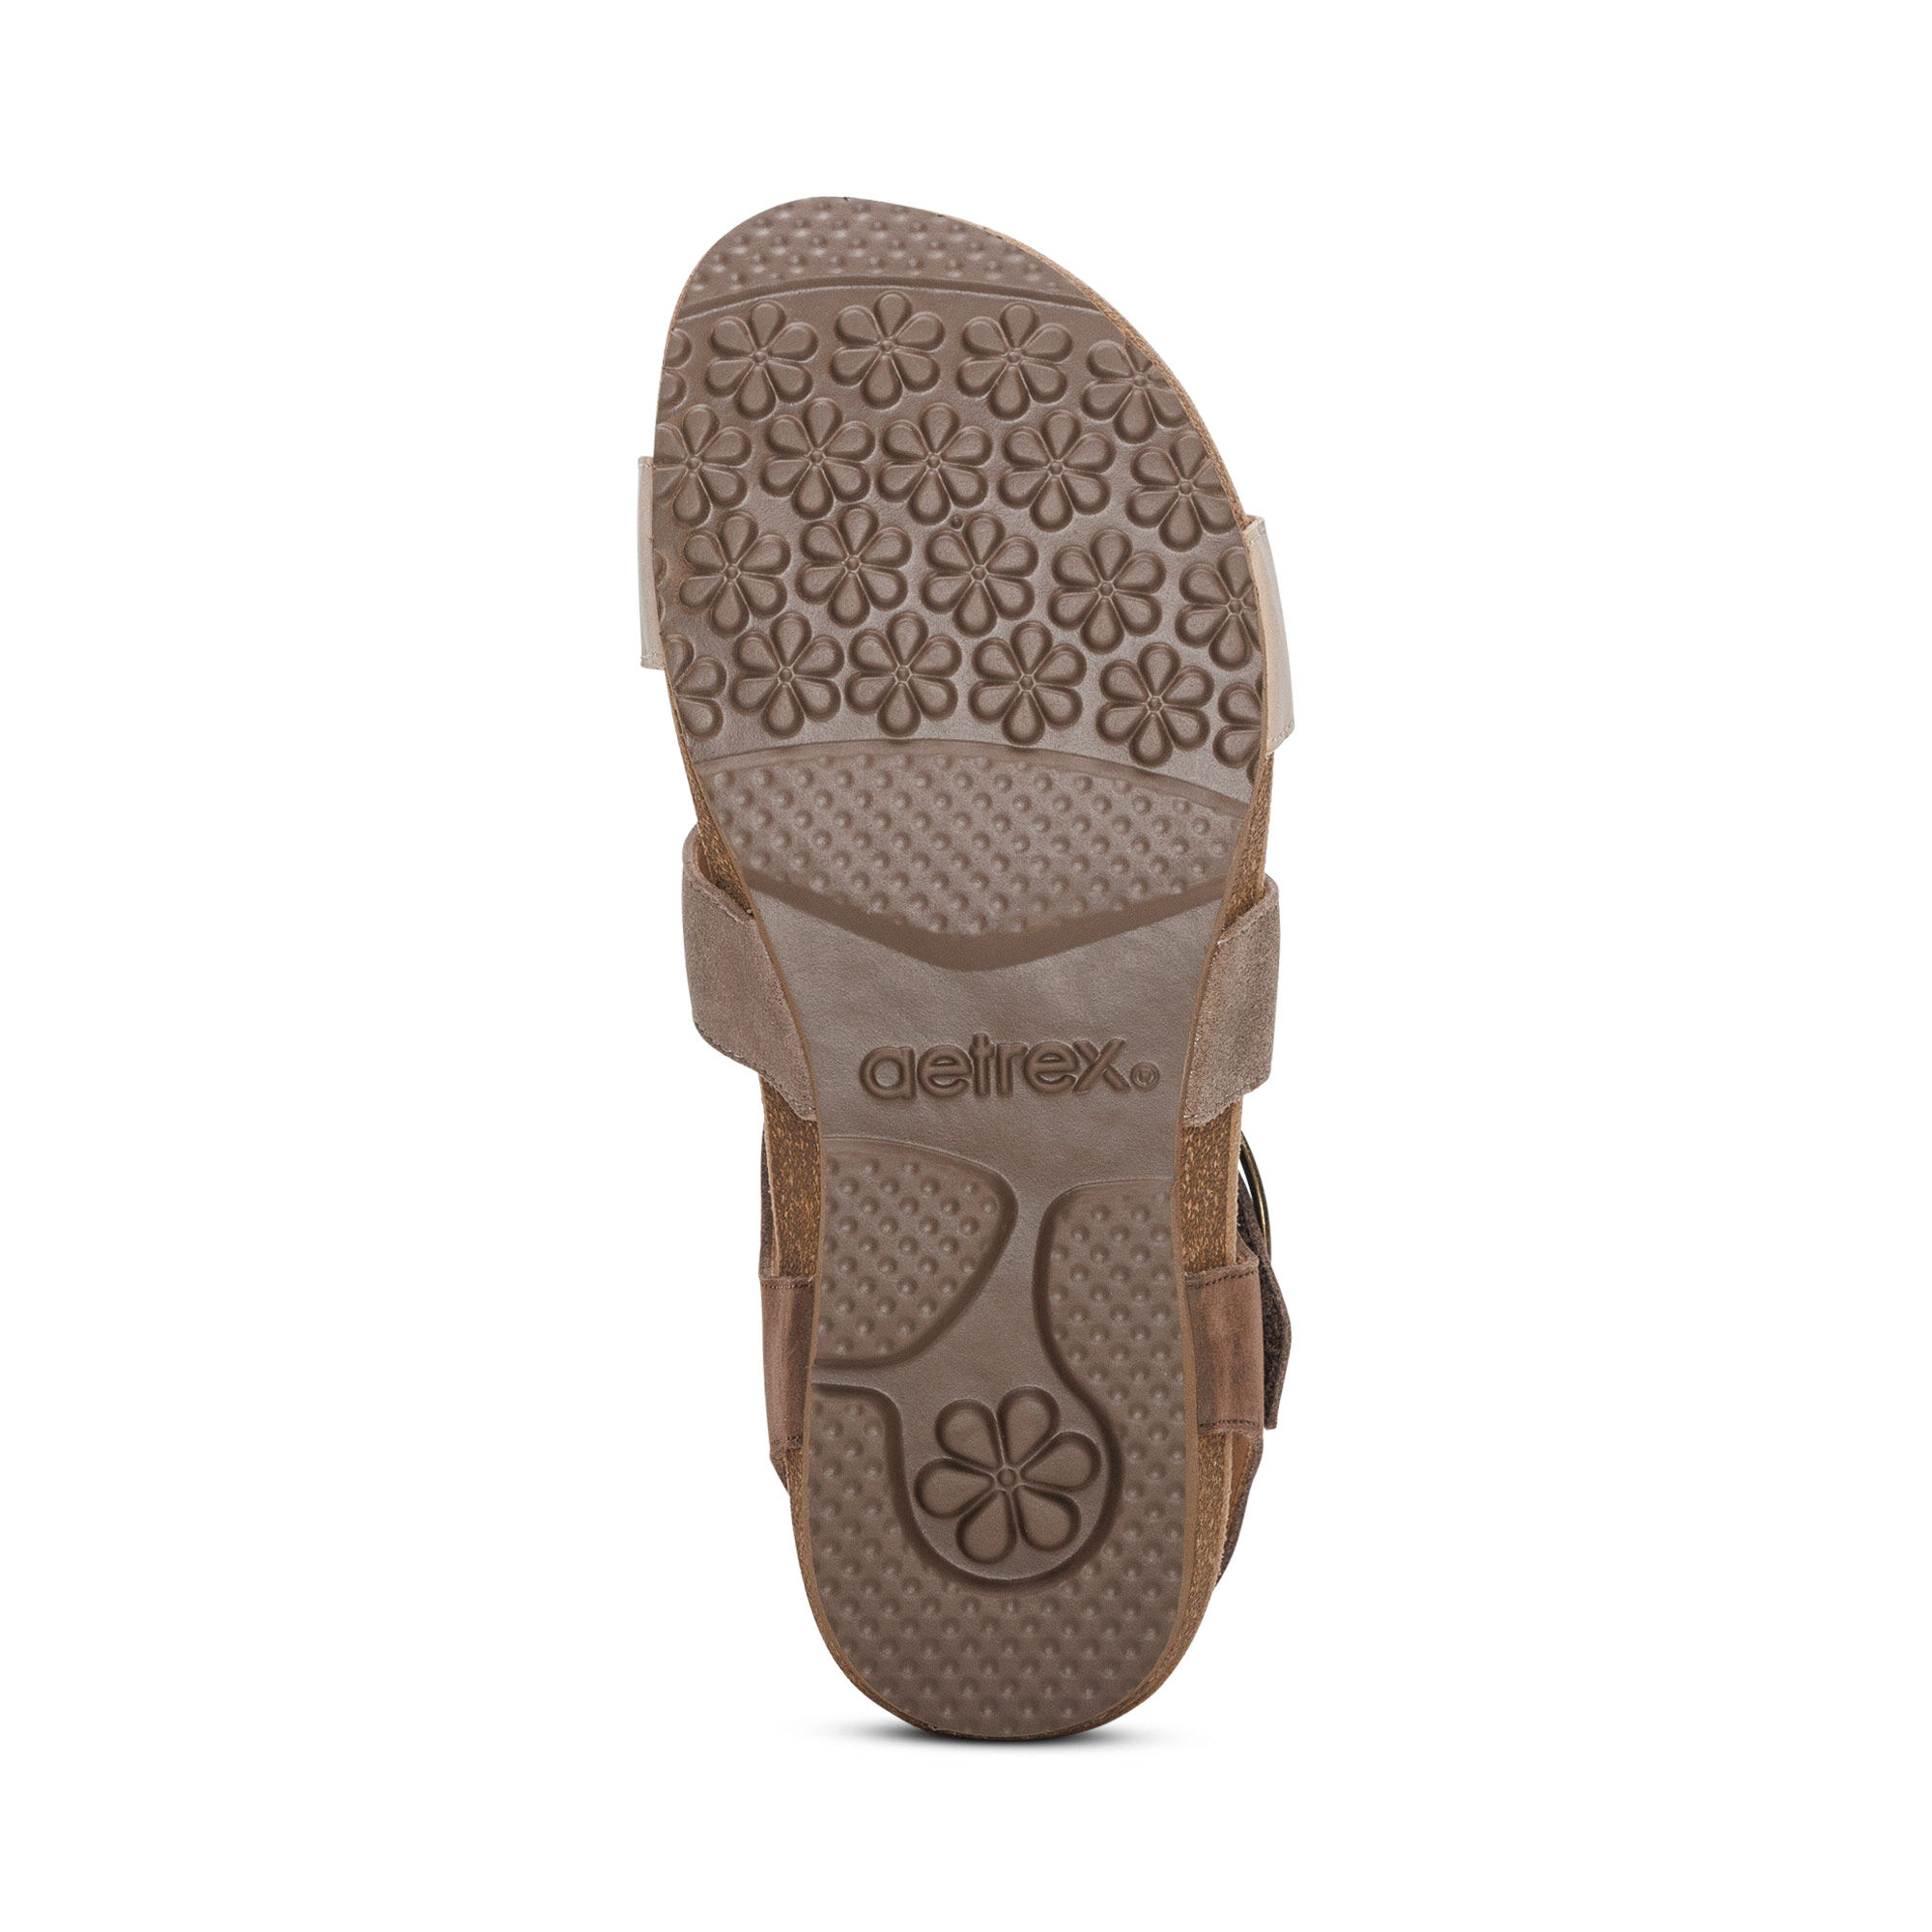 Aqualetas Sport Men's Todo Terreno Waterproof Hook & Loop Strap Sandal US  Size 9 | eBay